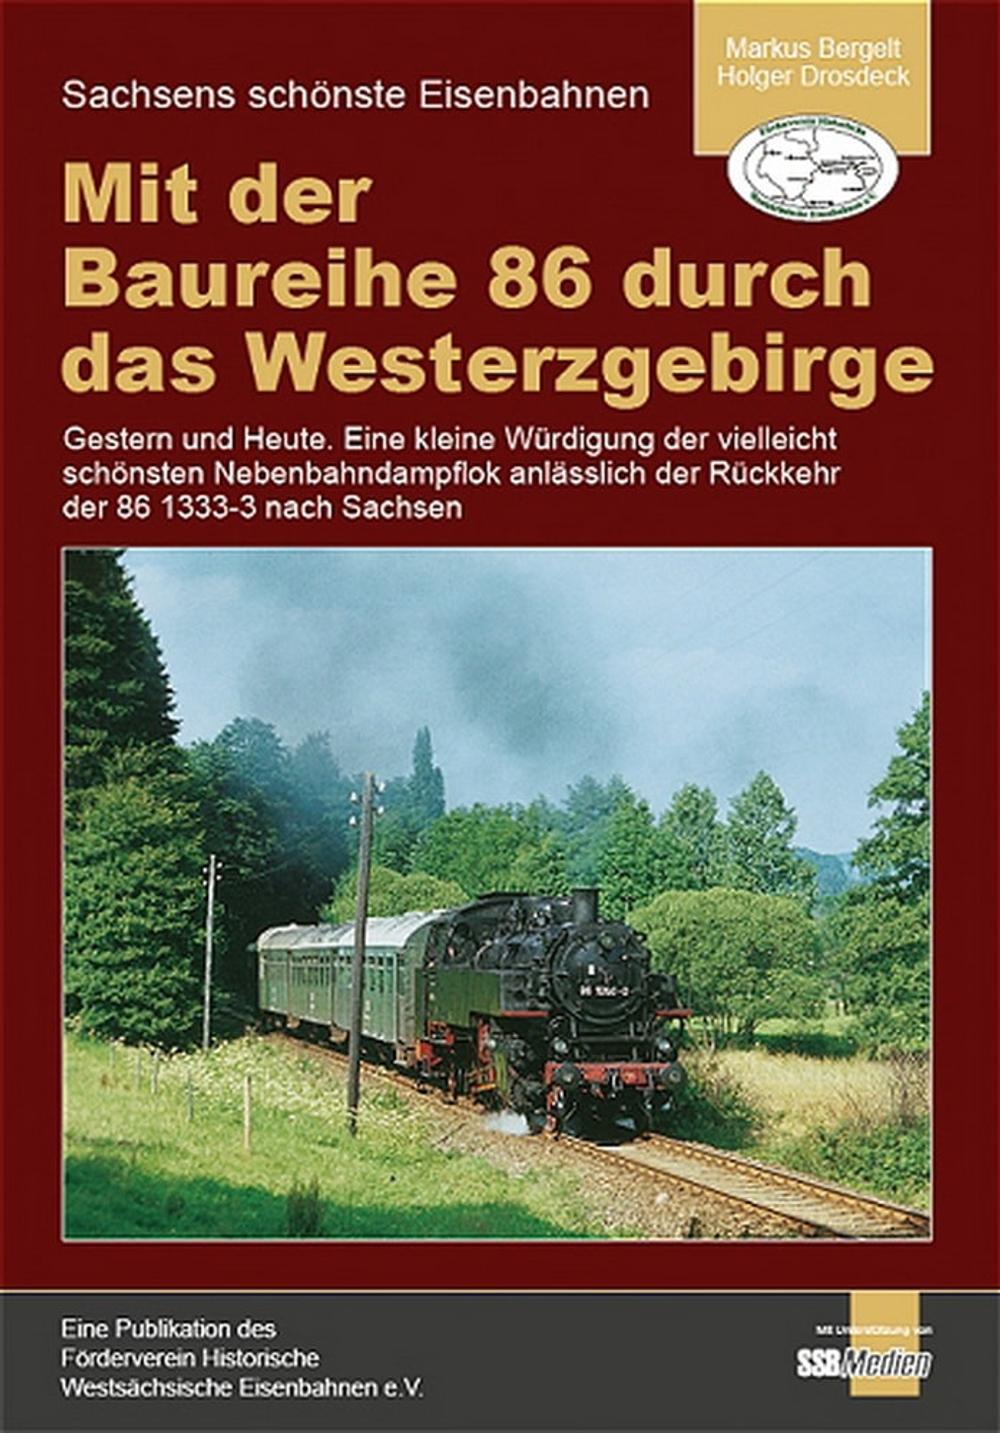 Coverbild „Mit der Baureihe 86 durch das Westerzgebirge“